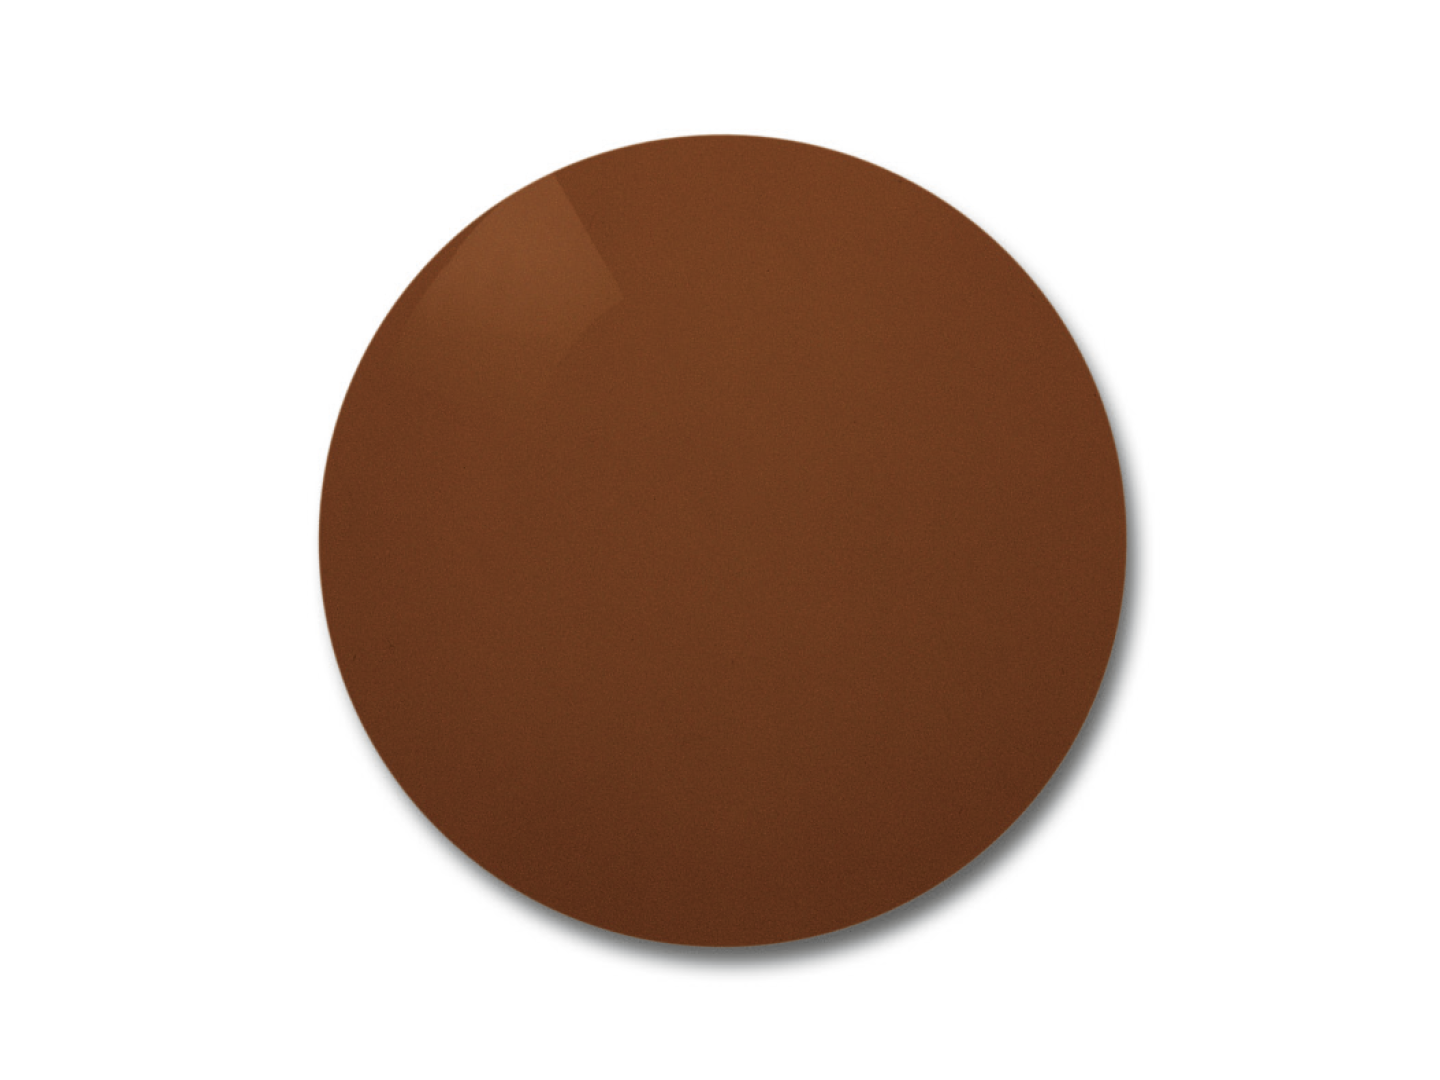 Obraz soczewki ZEISS Skylet Road z brązowym odcieniem